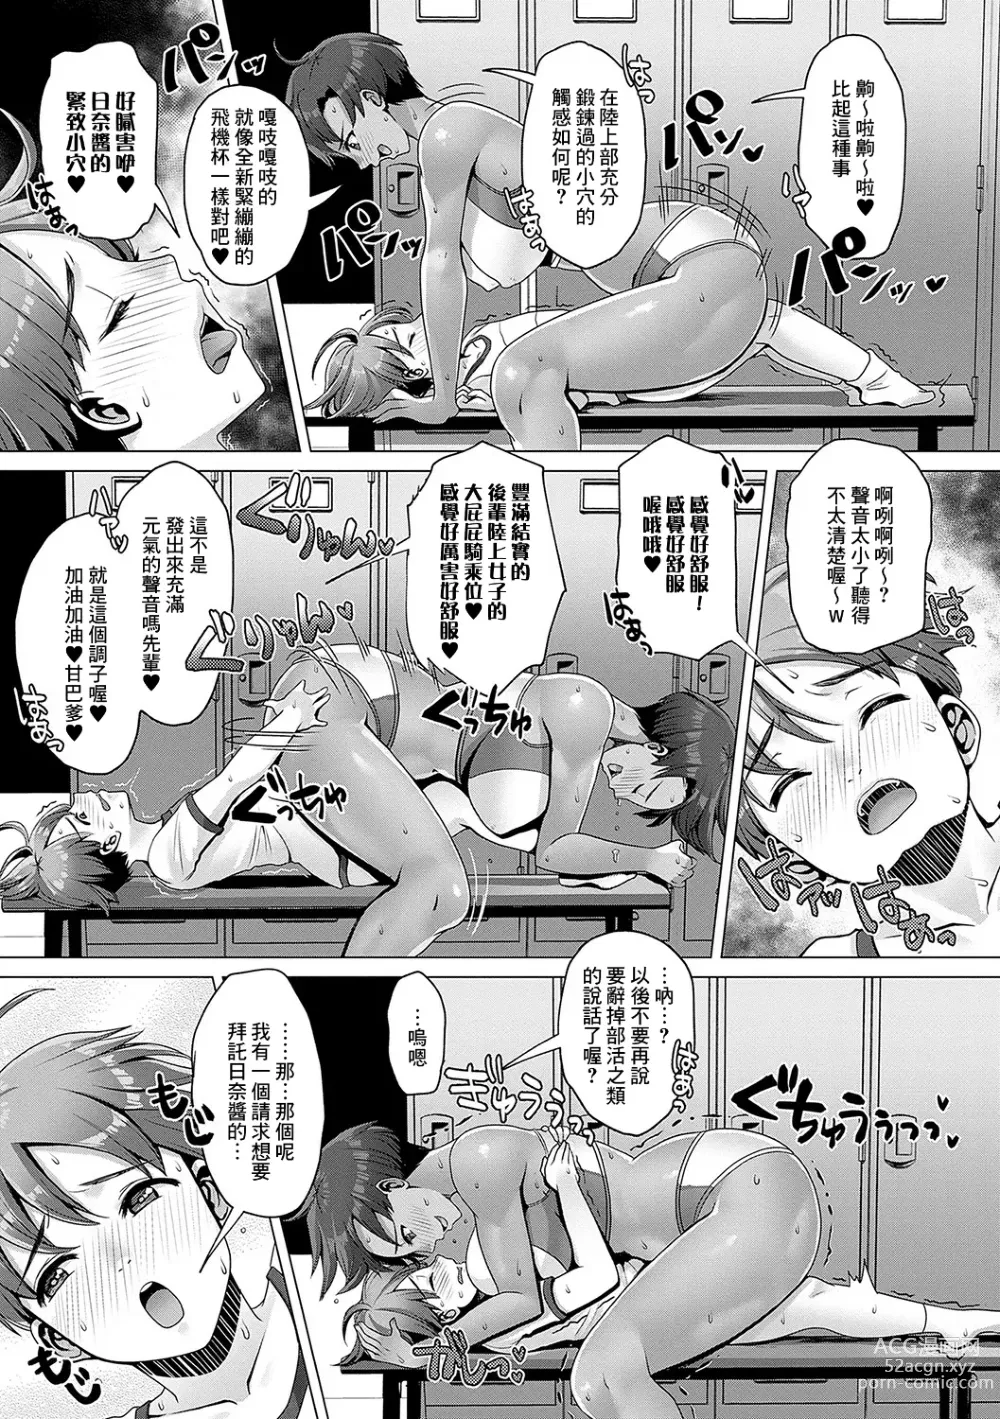 Page 13 of manga Amayakashi Gakuen no Amayakashi Gakuen SEIkatsu ♥